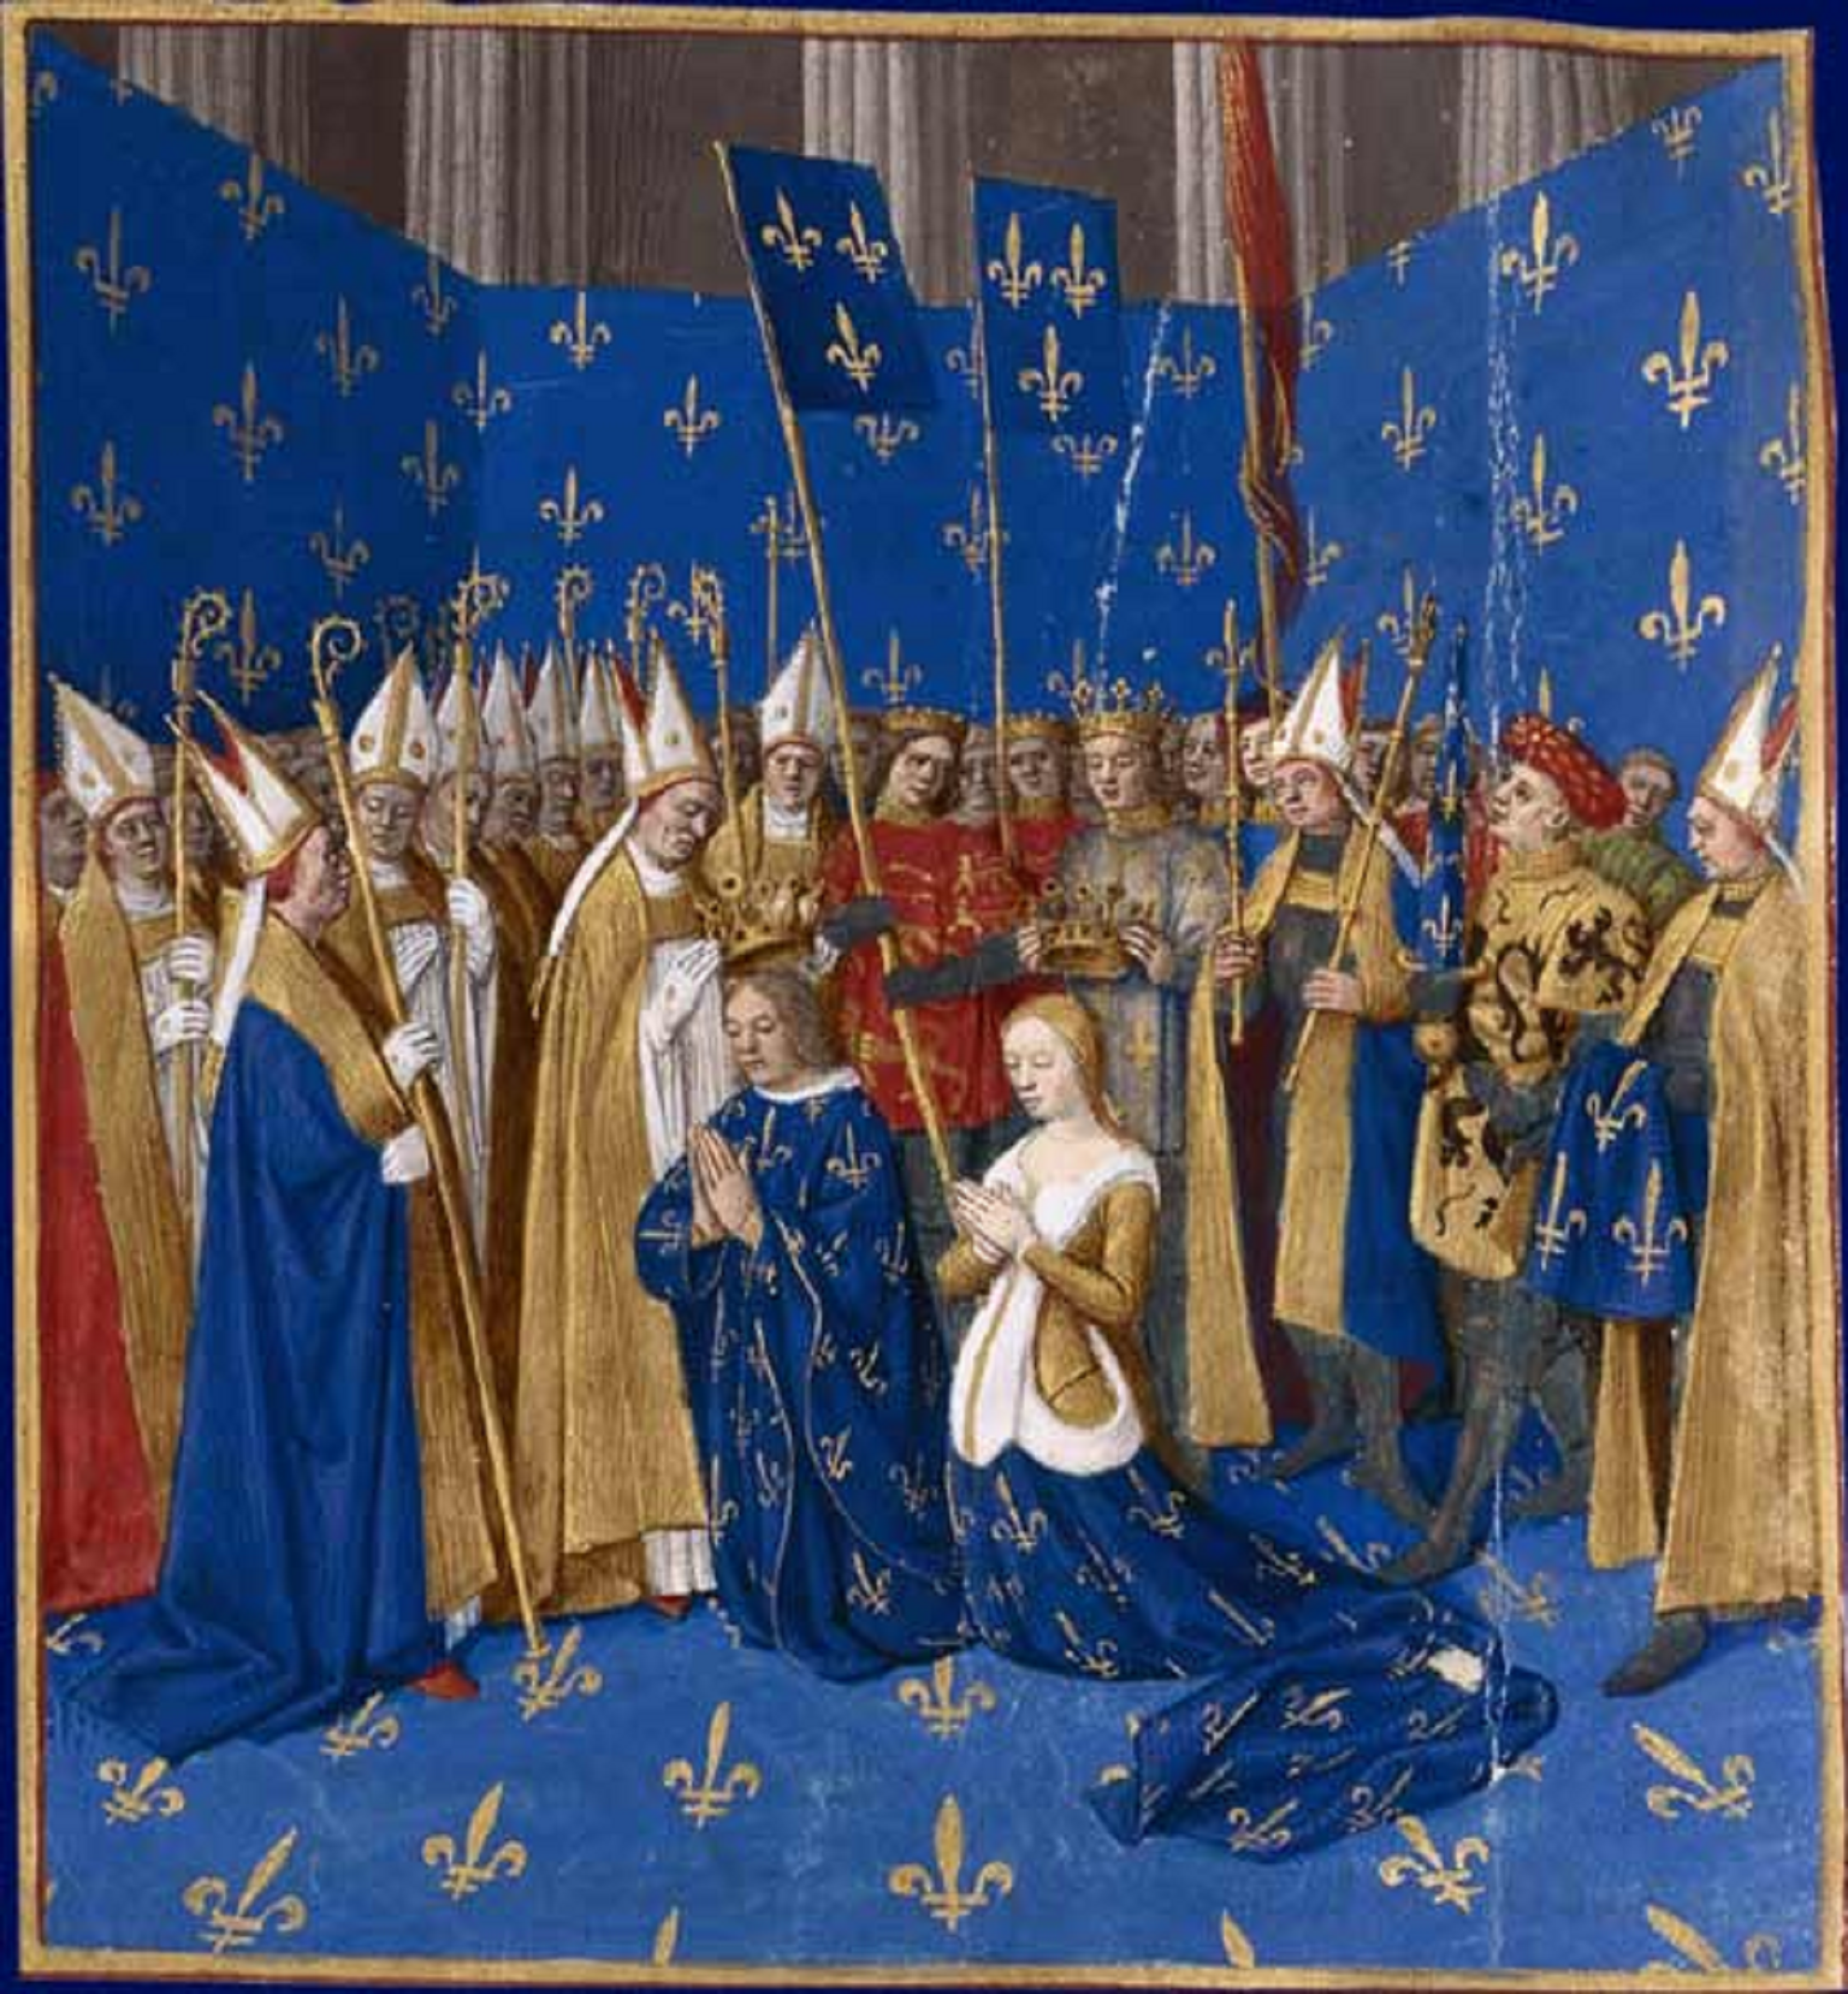 Miniatura que representa la coronación de Felipe Augusto de Francia y Elisabet d'Hainault. Fuente Bibliothèque Nationale de France